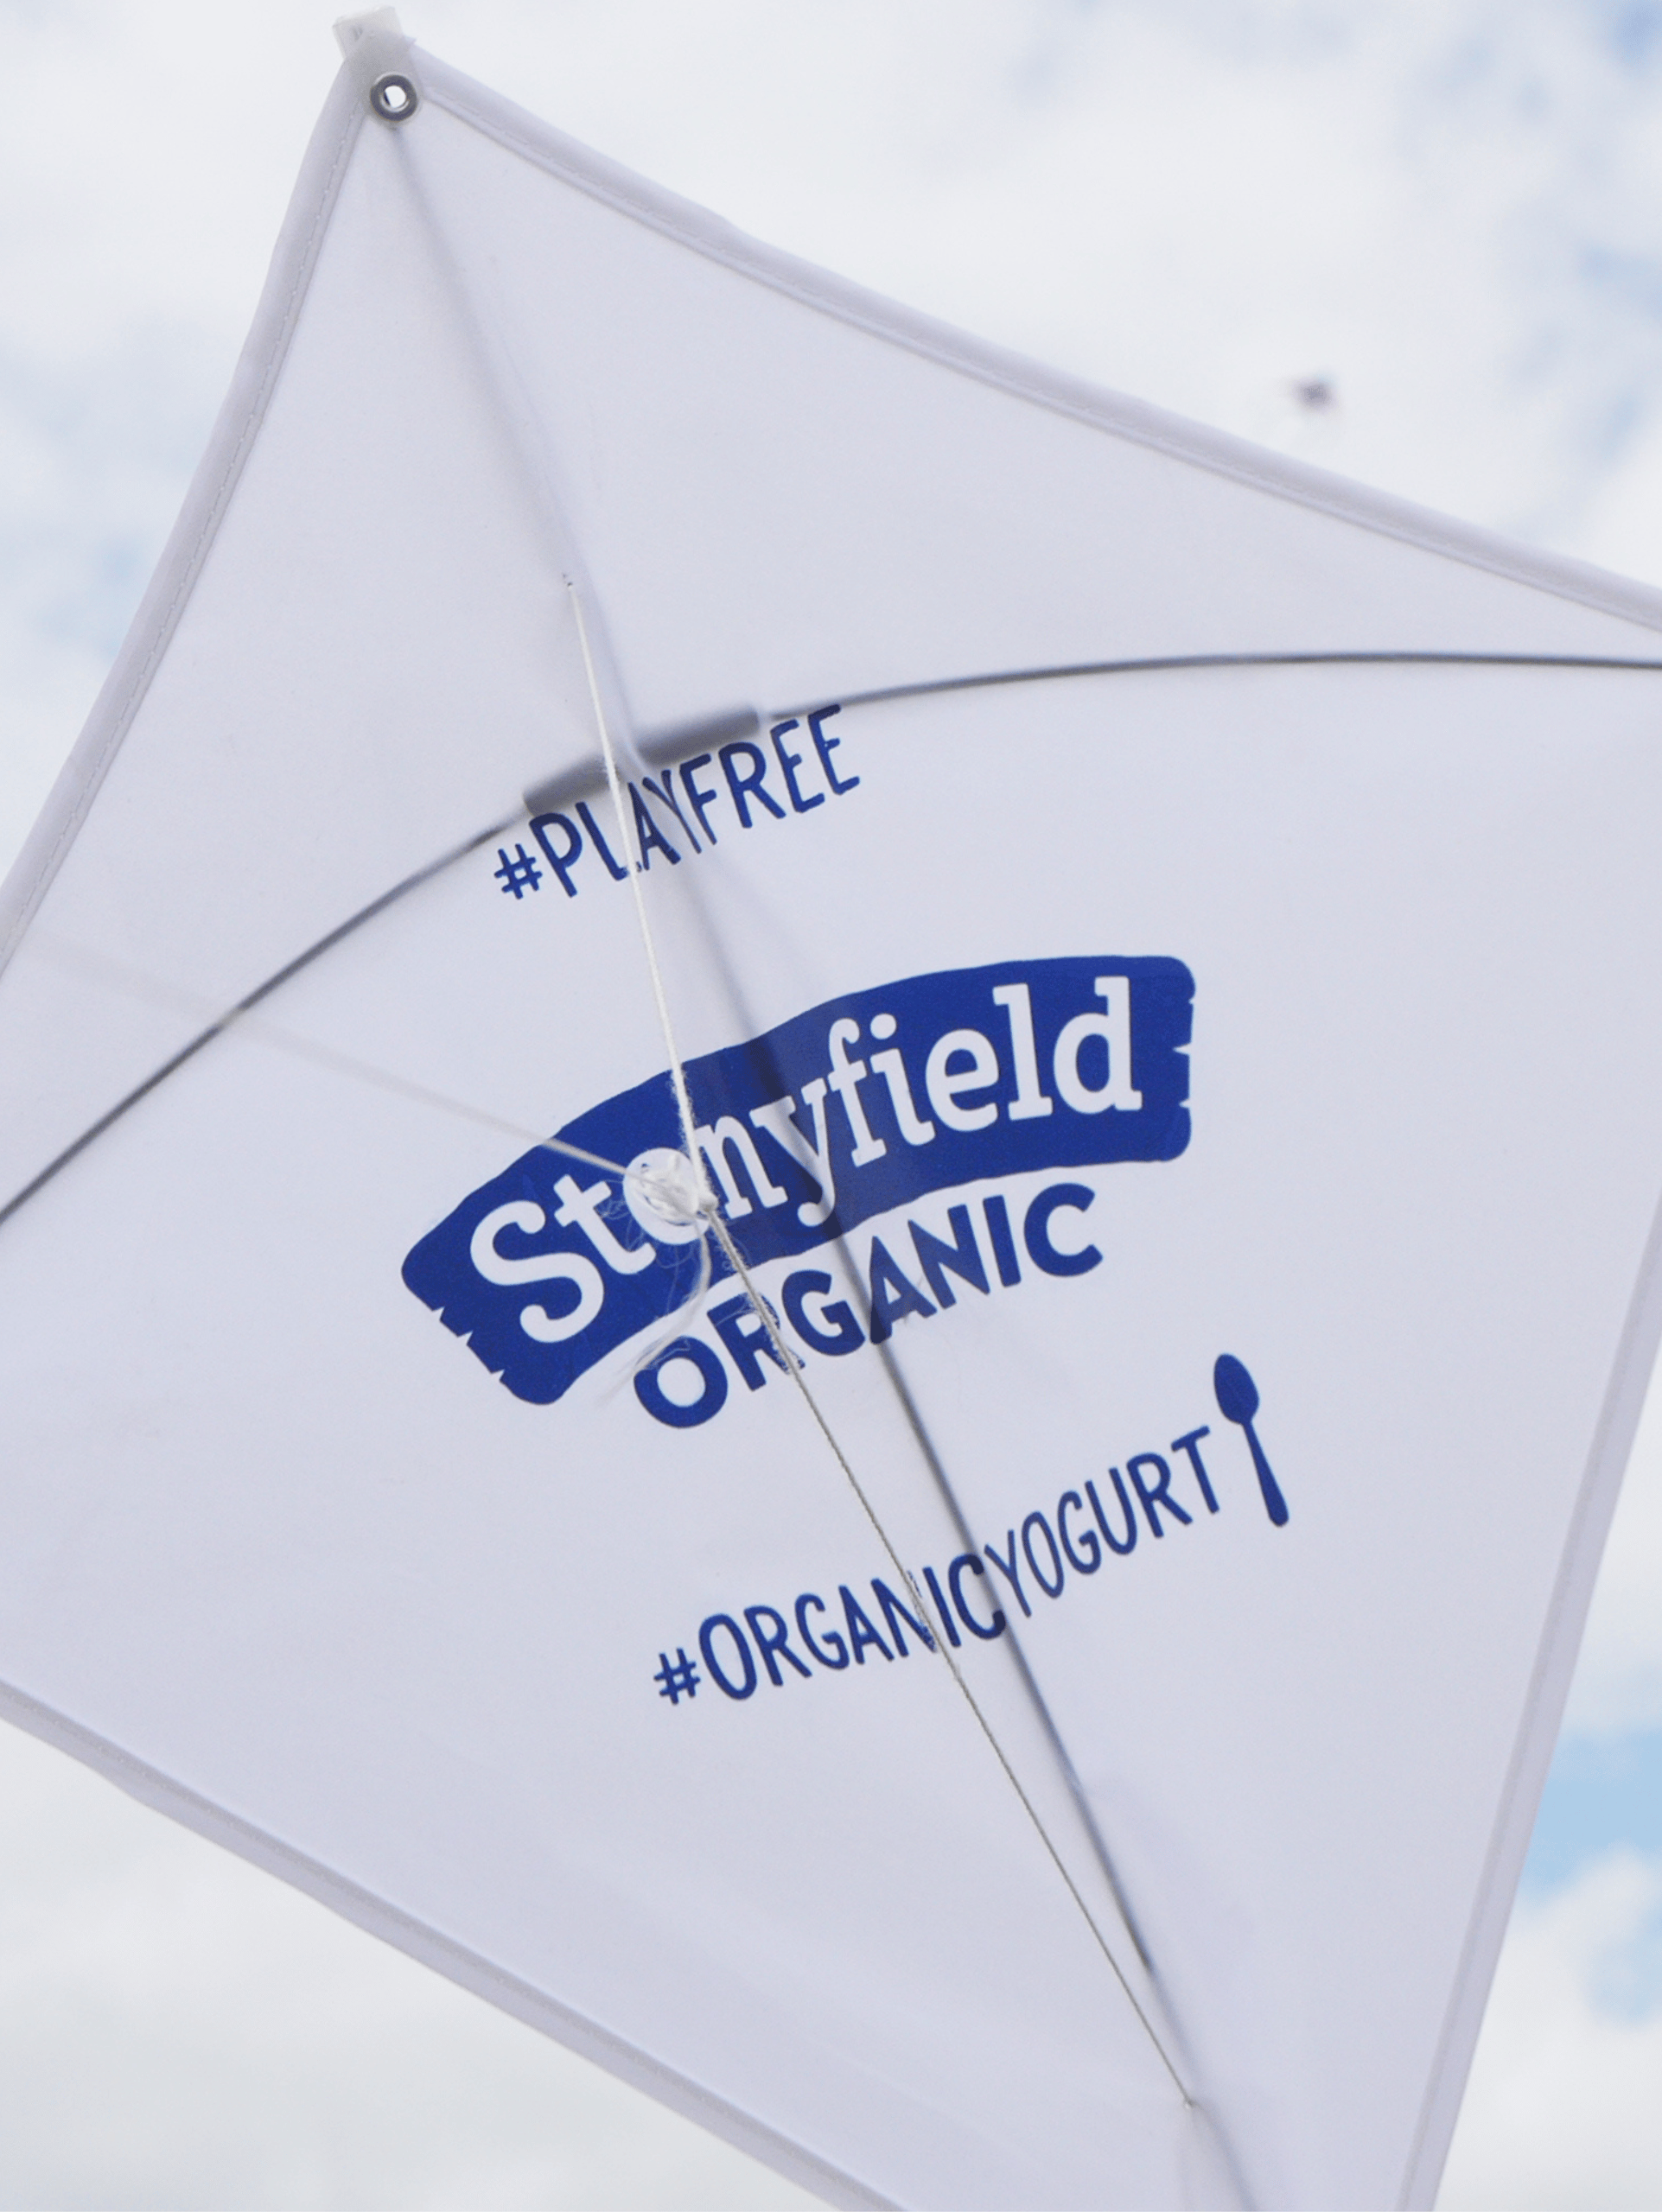 Stonyfield Organic: StonyFIELDS Initiative